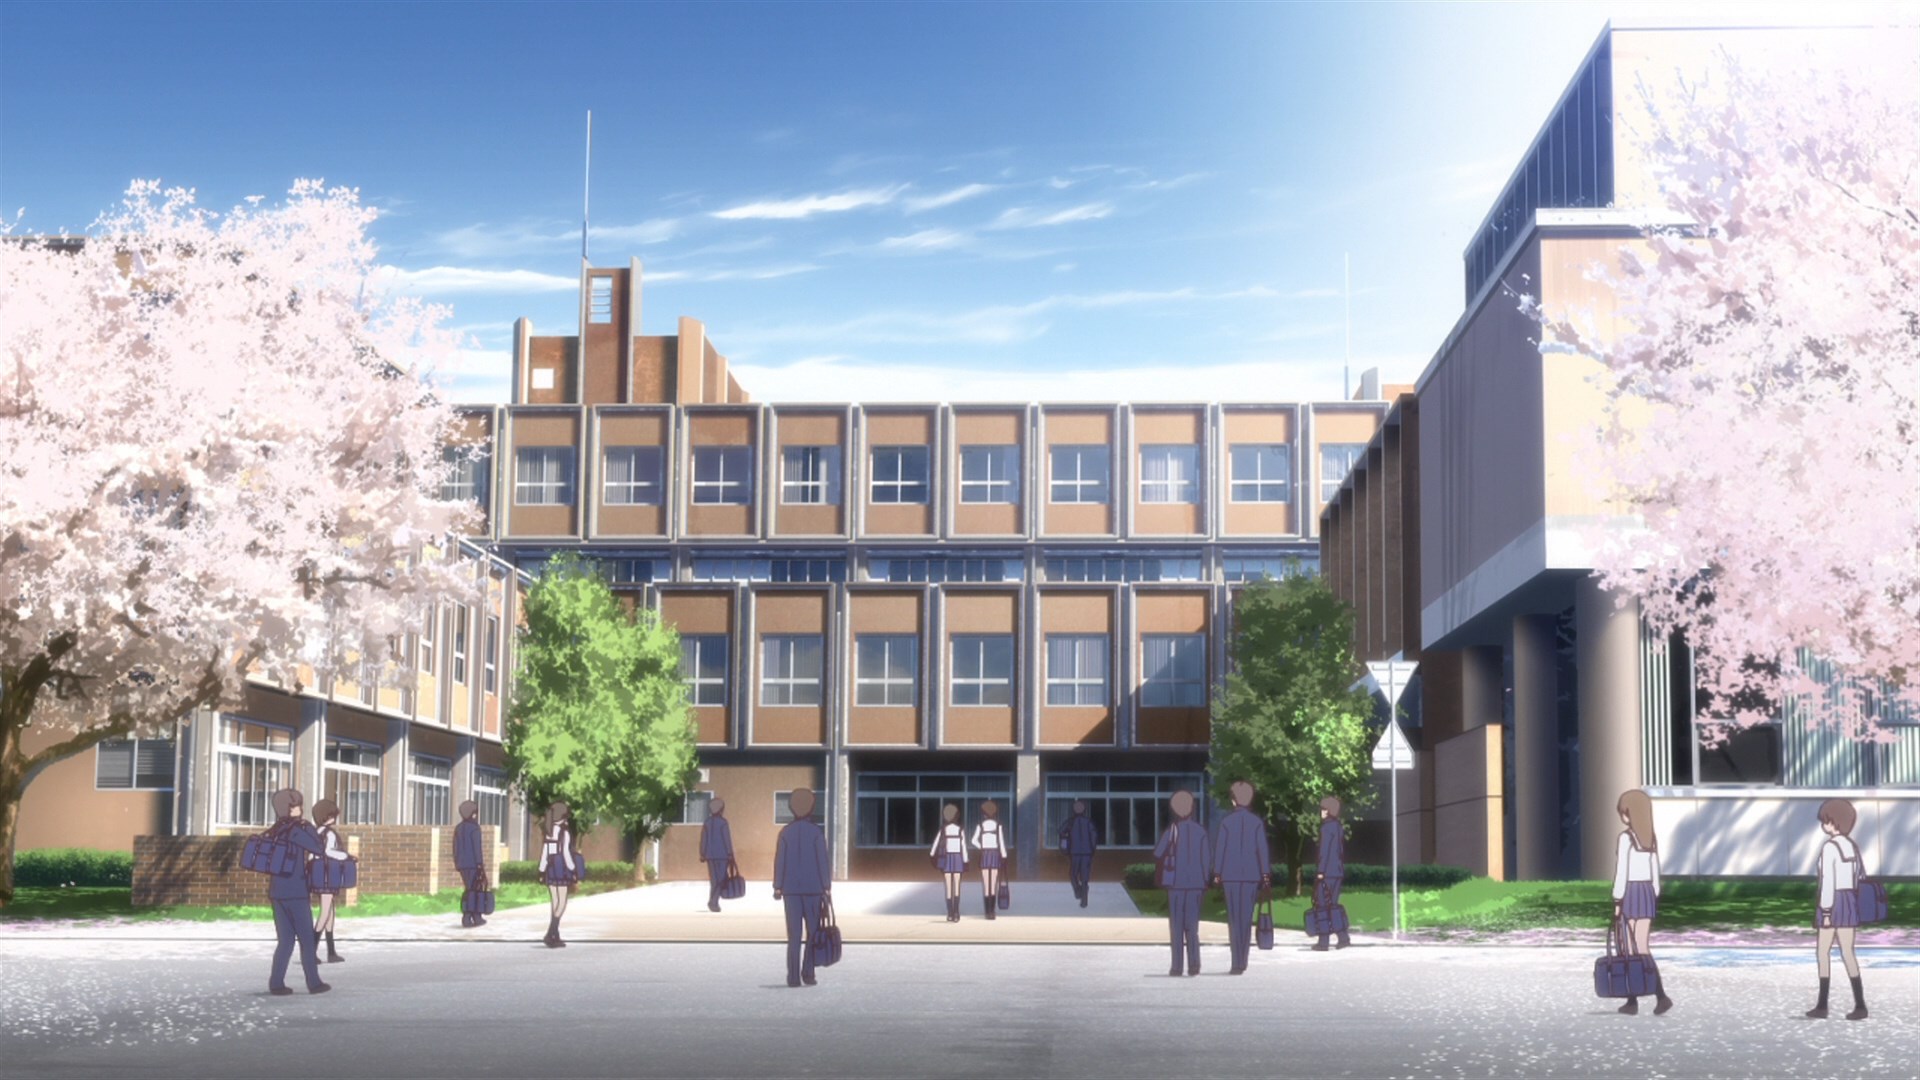 This is high school. Резиденция Мисака Токийский университет. Токийский университет (University of Tokyo), Япония.